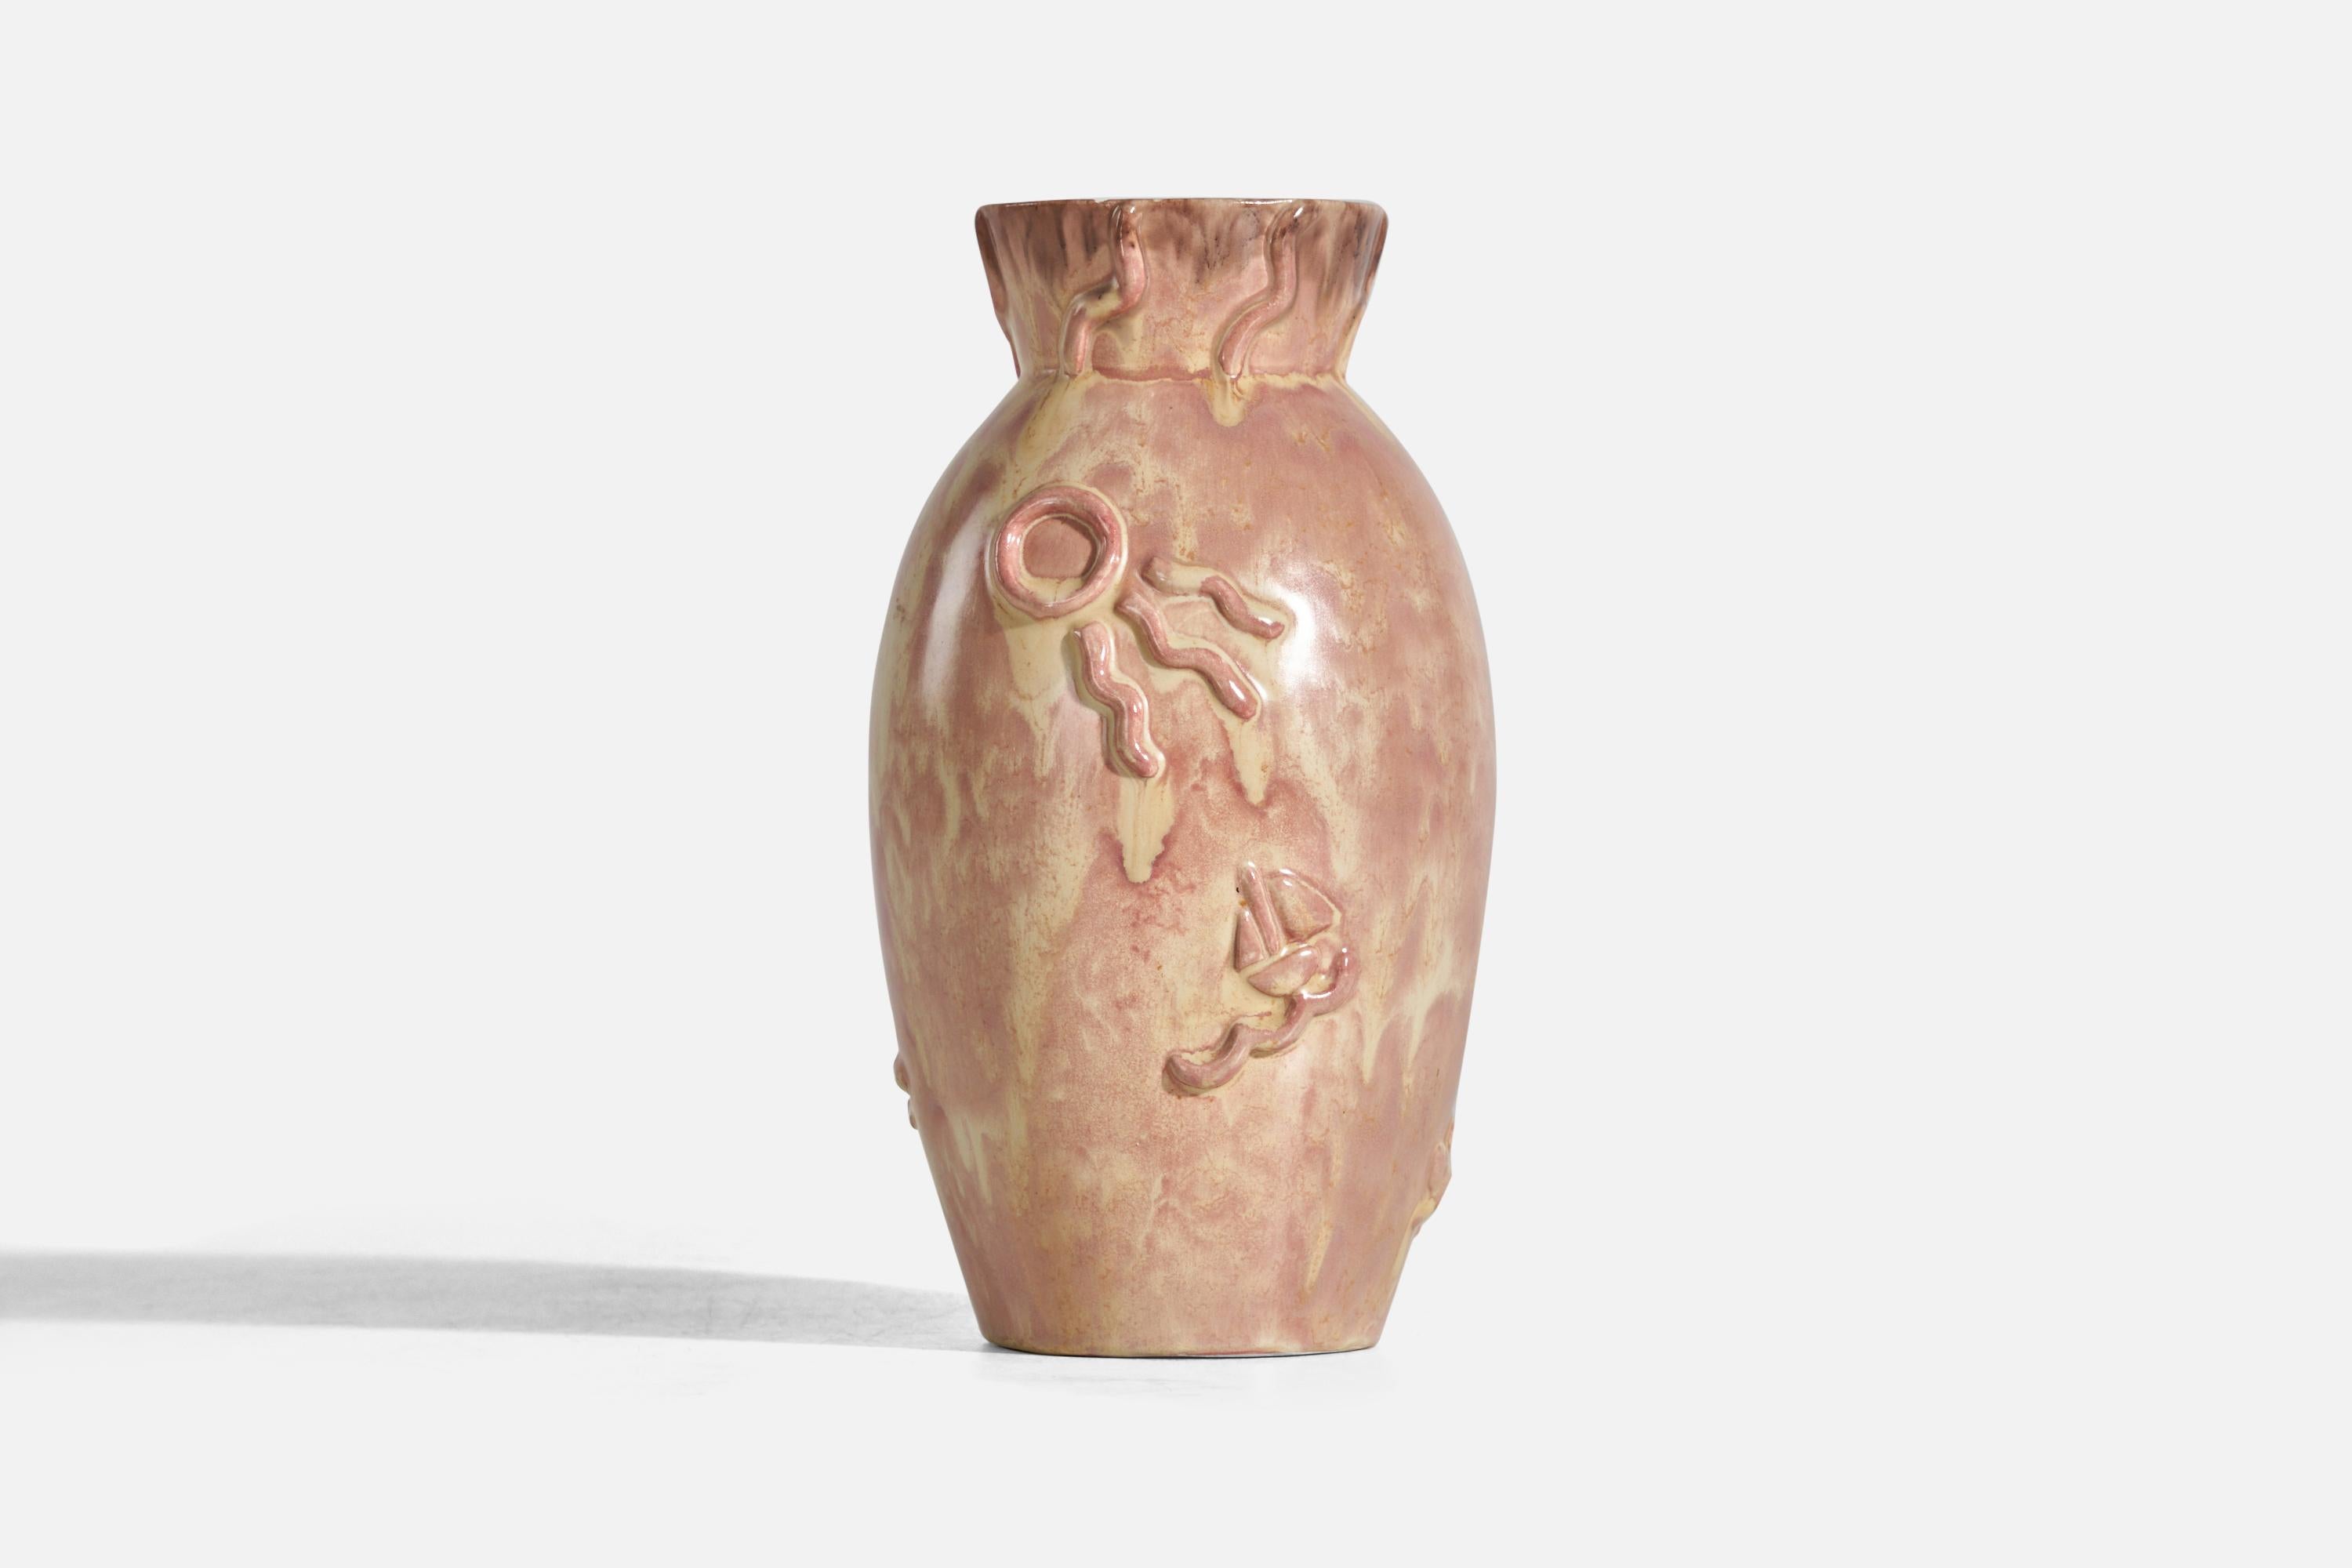 A pink, glazed earthenware vase designed and produced by Upsala Ekeby, Sweden, 1940s.

